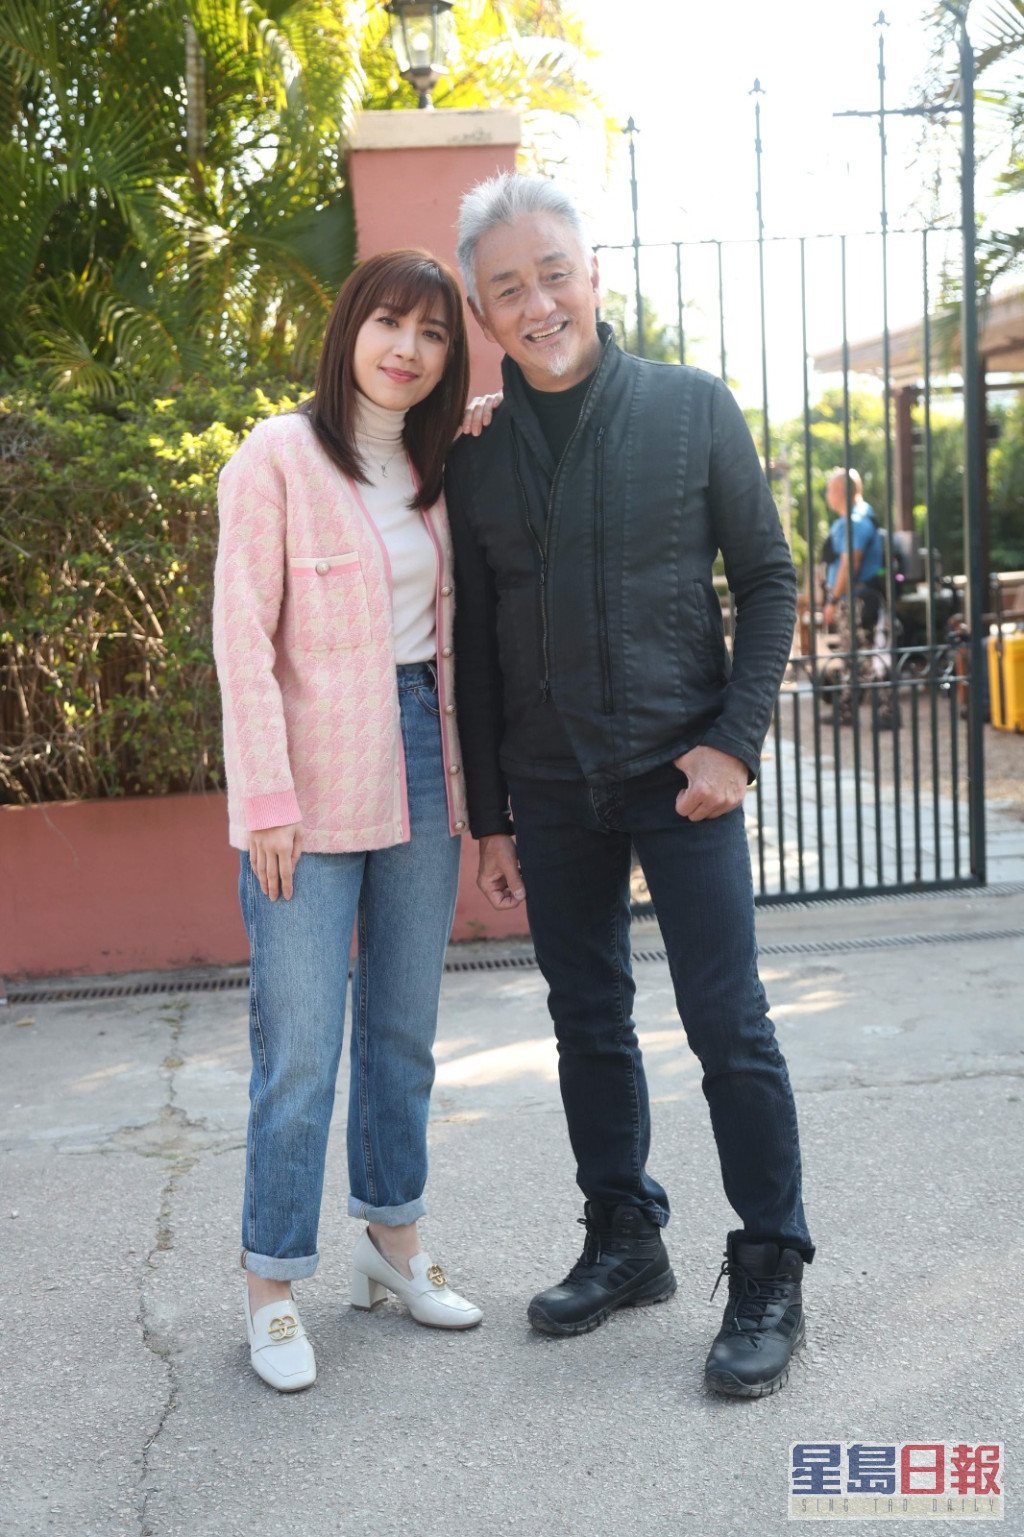 黄智雯在新剧会被饰演父亲的吴岱融暴力对待。